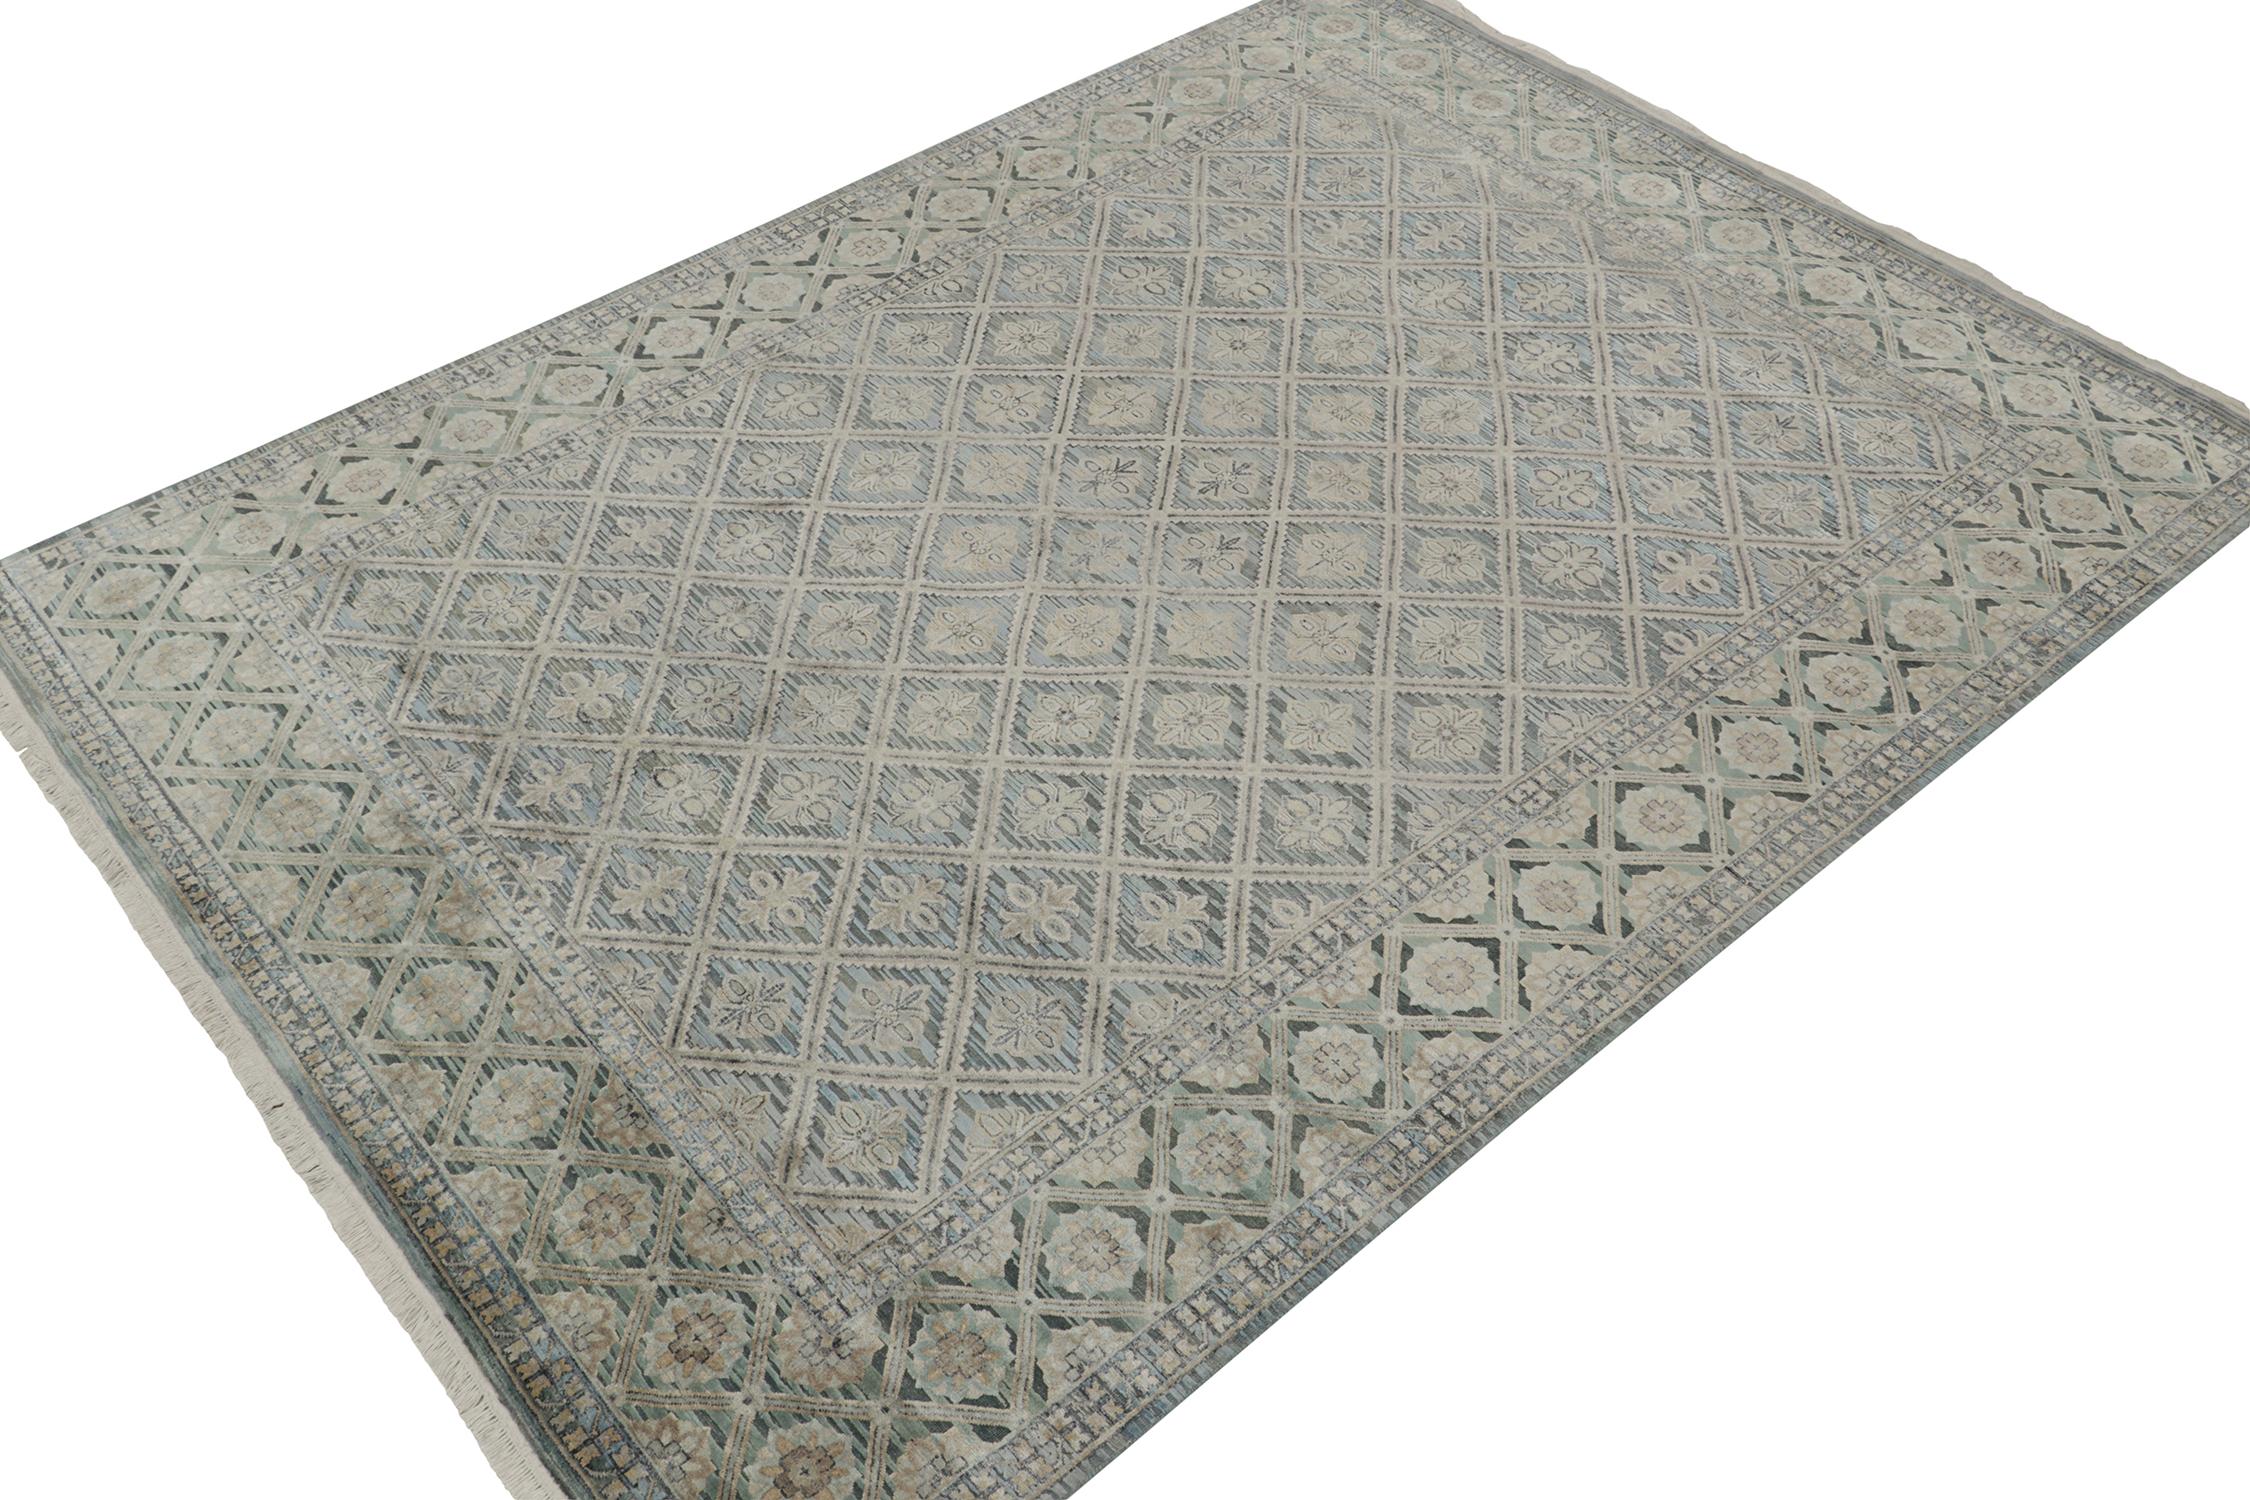 Dieser antike französische Deco-Teppich im Format 9x13 ist die nächste Ergänzung zu Rug & Kilims seltener Auswahl an klassischen Teppichen. Handgeknüpft aus Wolle, ca. 1920-1930.
Weiter zum Design: 
Dieses äußerst seltene Stück ist ein Beispiel für